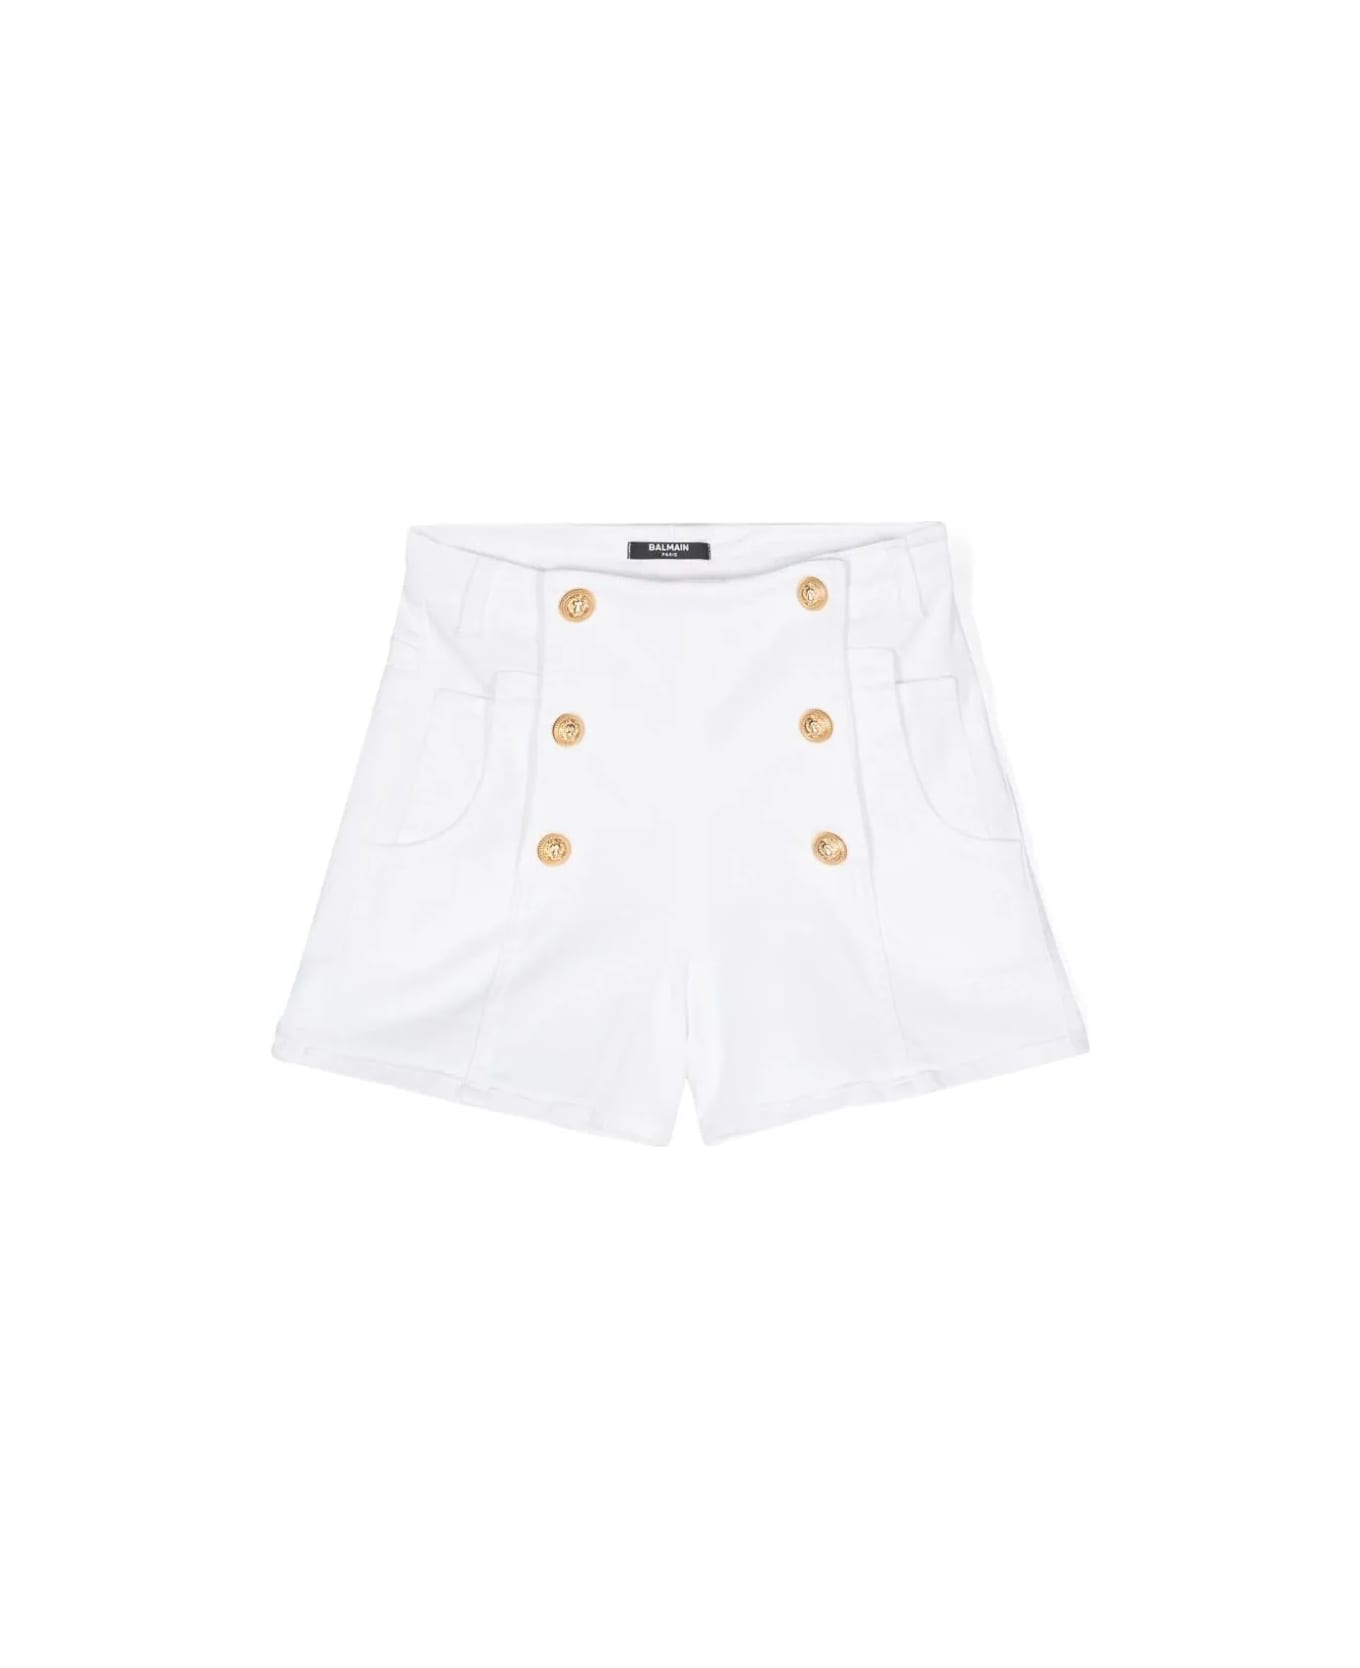 Balmain Shorts Denim - White/gold ボトムス